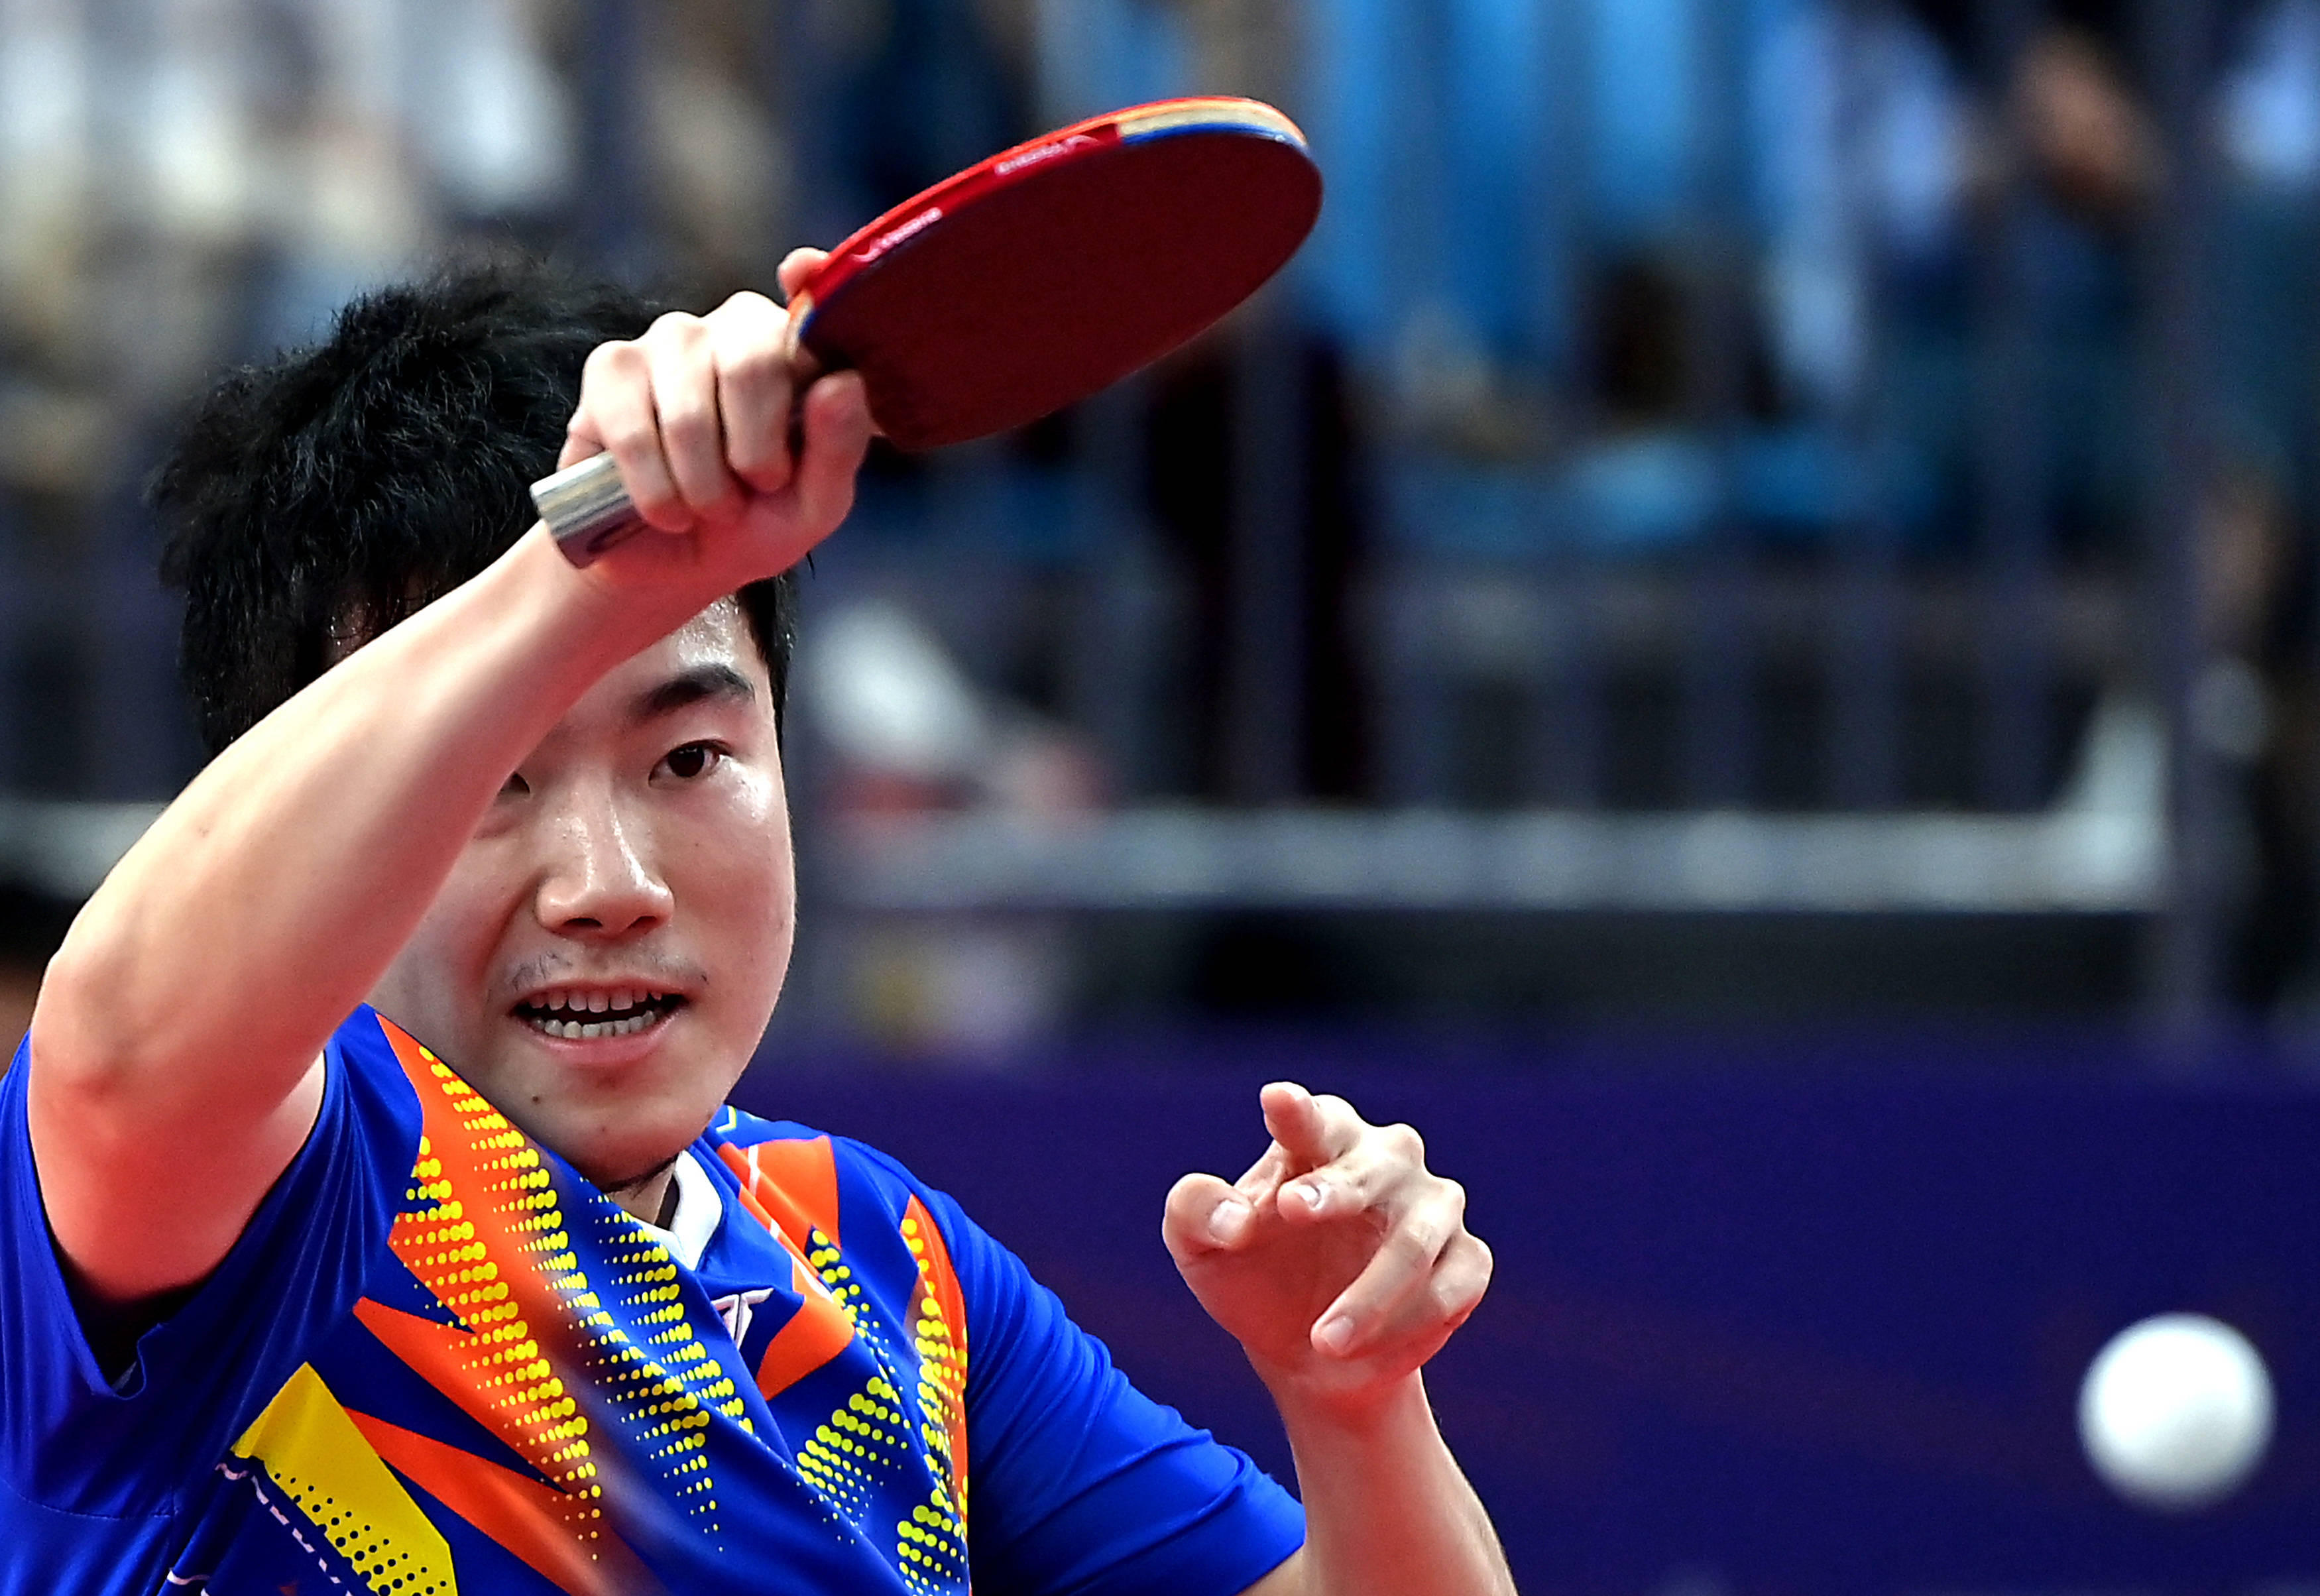 当日,在陕西延安进行的第十四届全运会乒乓球项目男子单打1/8决赛中